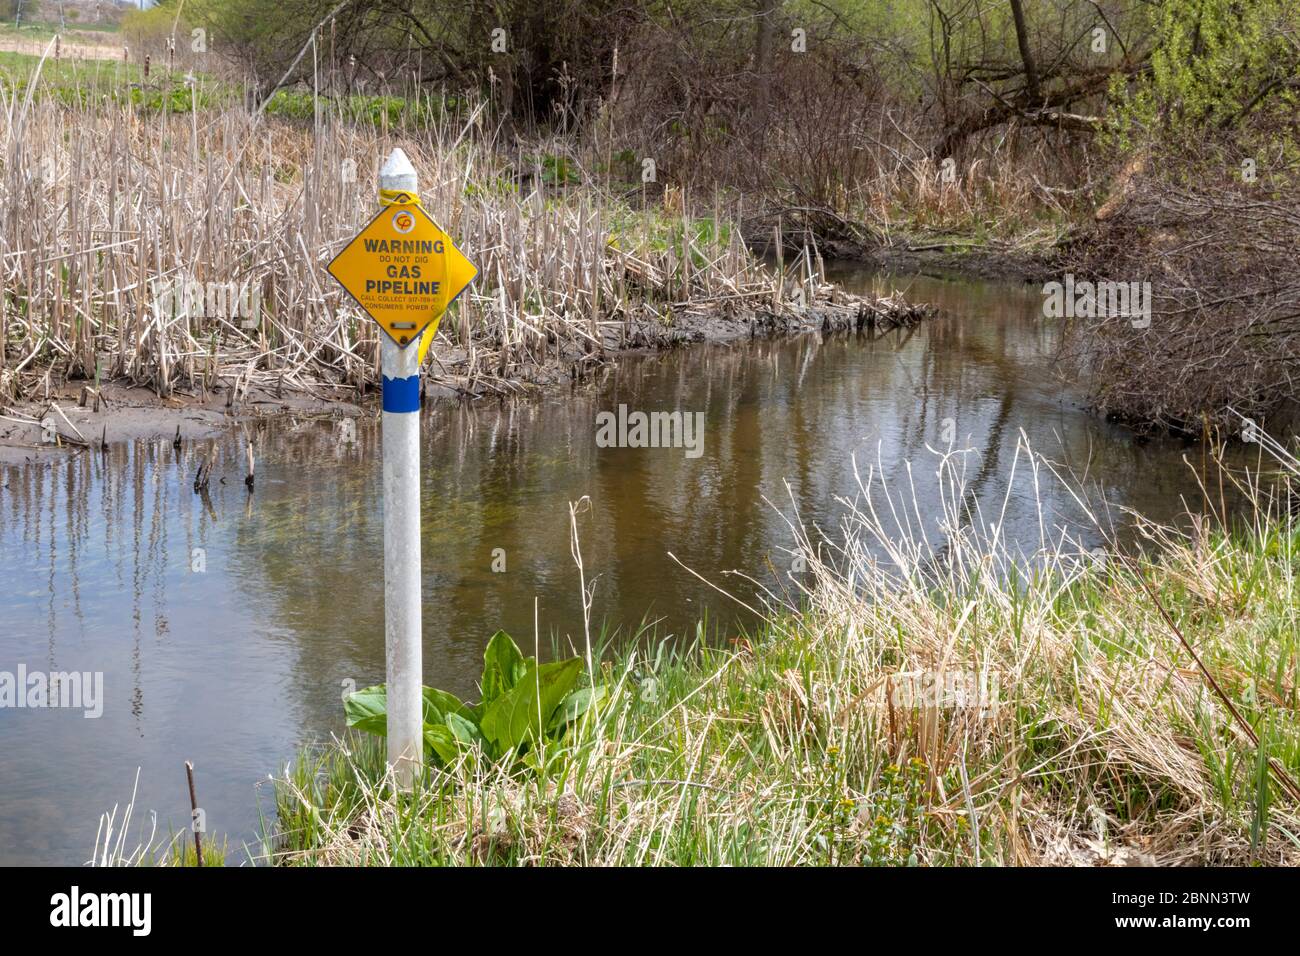 Washington Township, Michigan - EIN Schild markiert den Weg einer Verbraucher-Power-Gas-Pipeline, wie es Stony Creek in Stony Creek Metropark überquert. Stockfoto